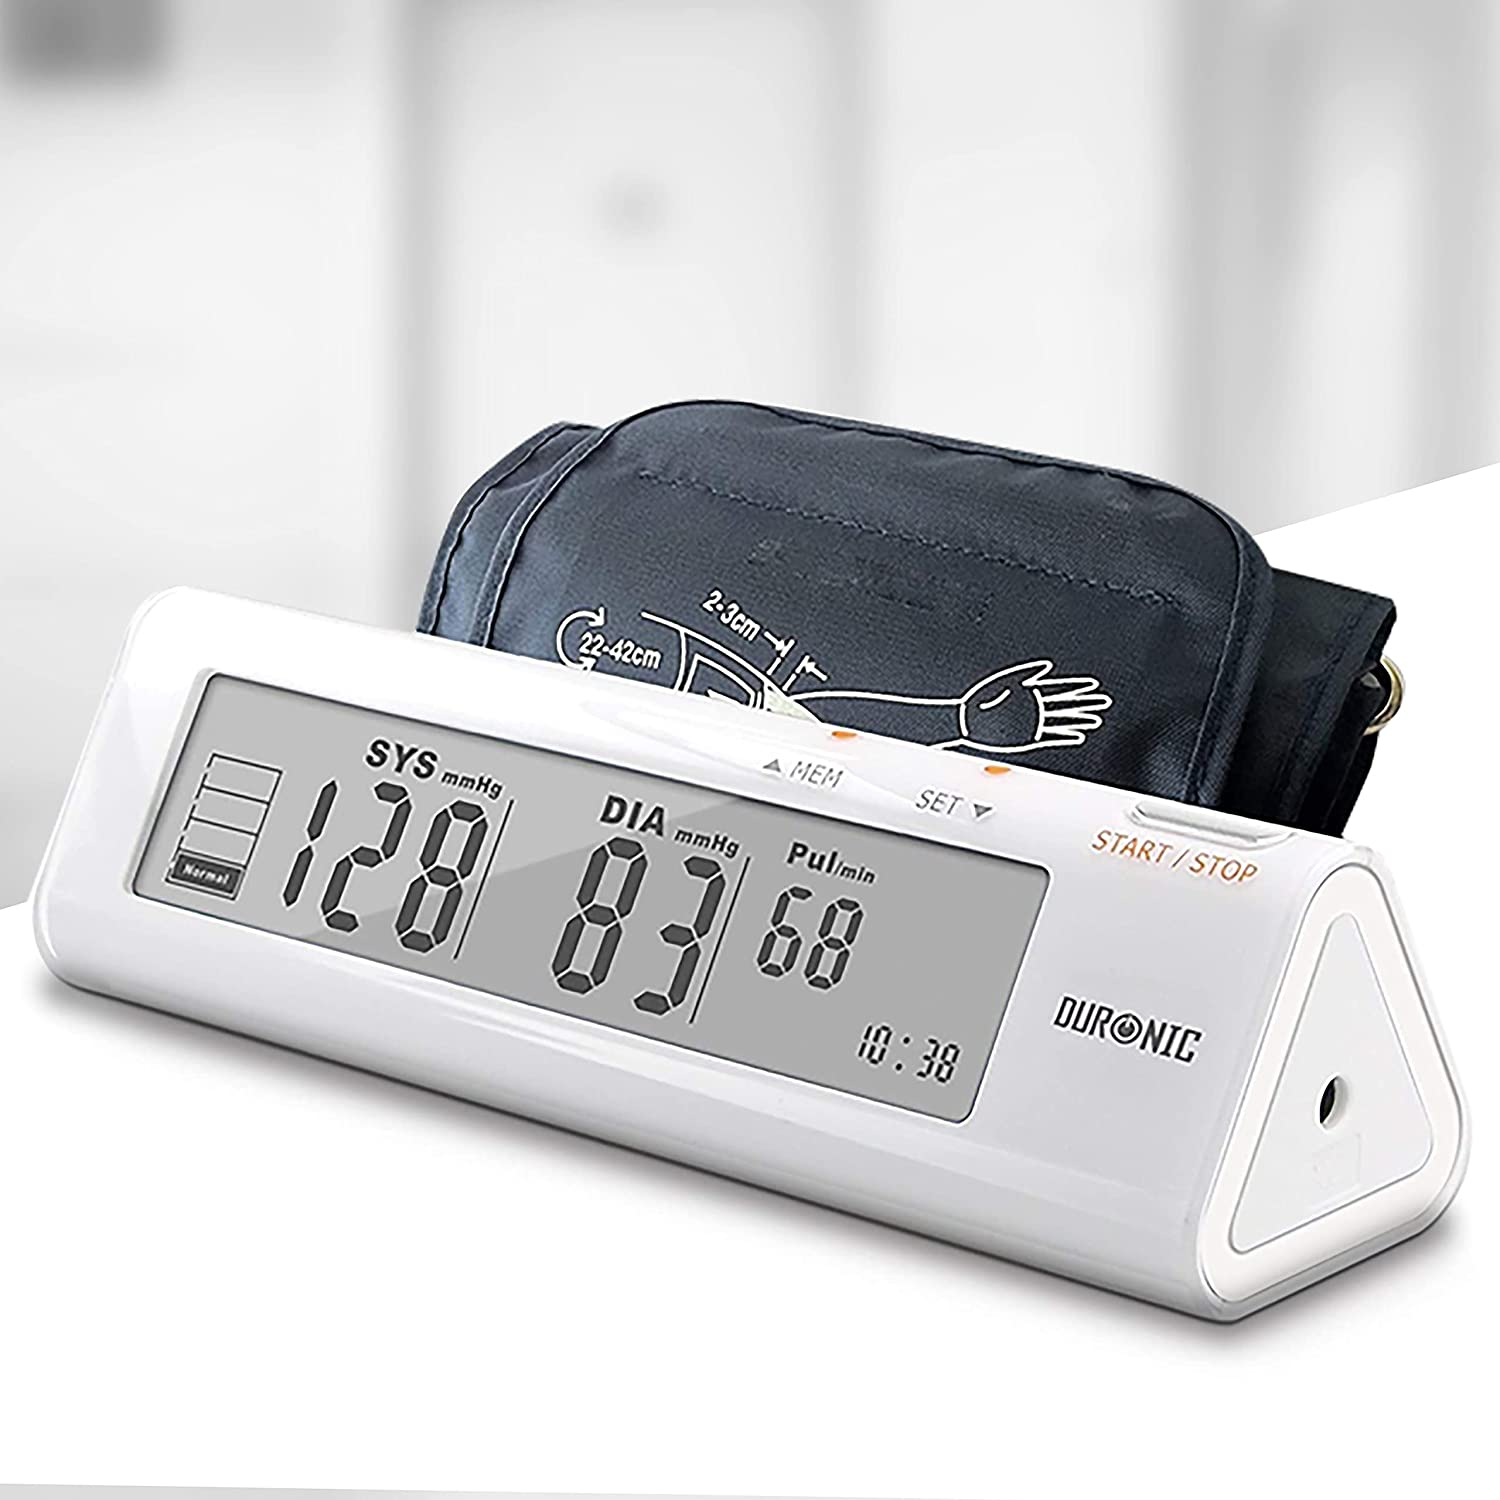 DURONIC BPM450 Bluthochdruckmessgerät